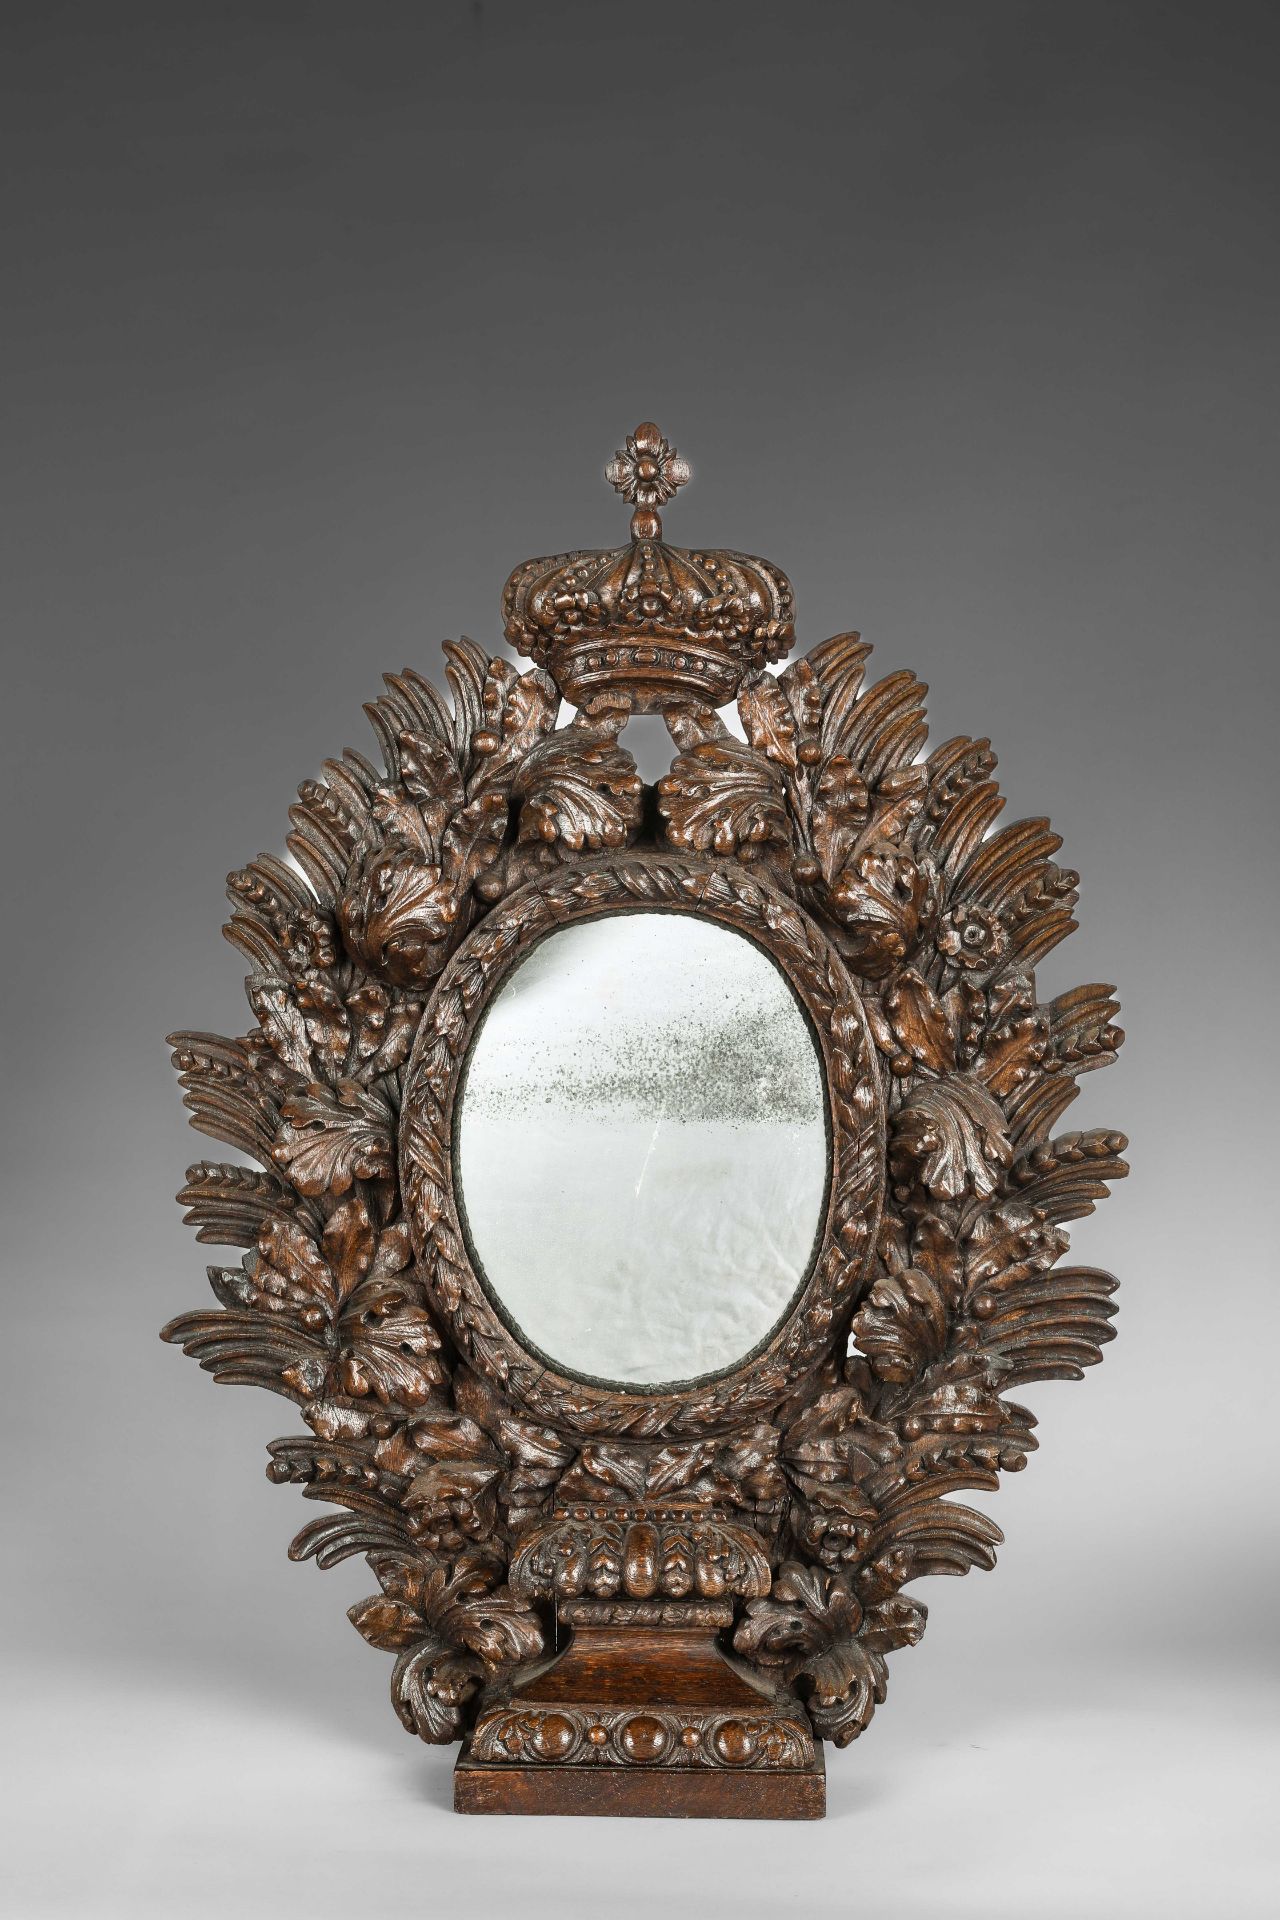 Paire de miroirs ovales a encadrements de guirlandes de feuillages surmontés d'une couronne Le - Image 2 of 4